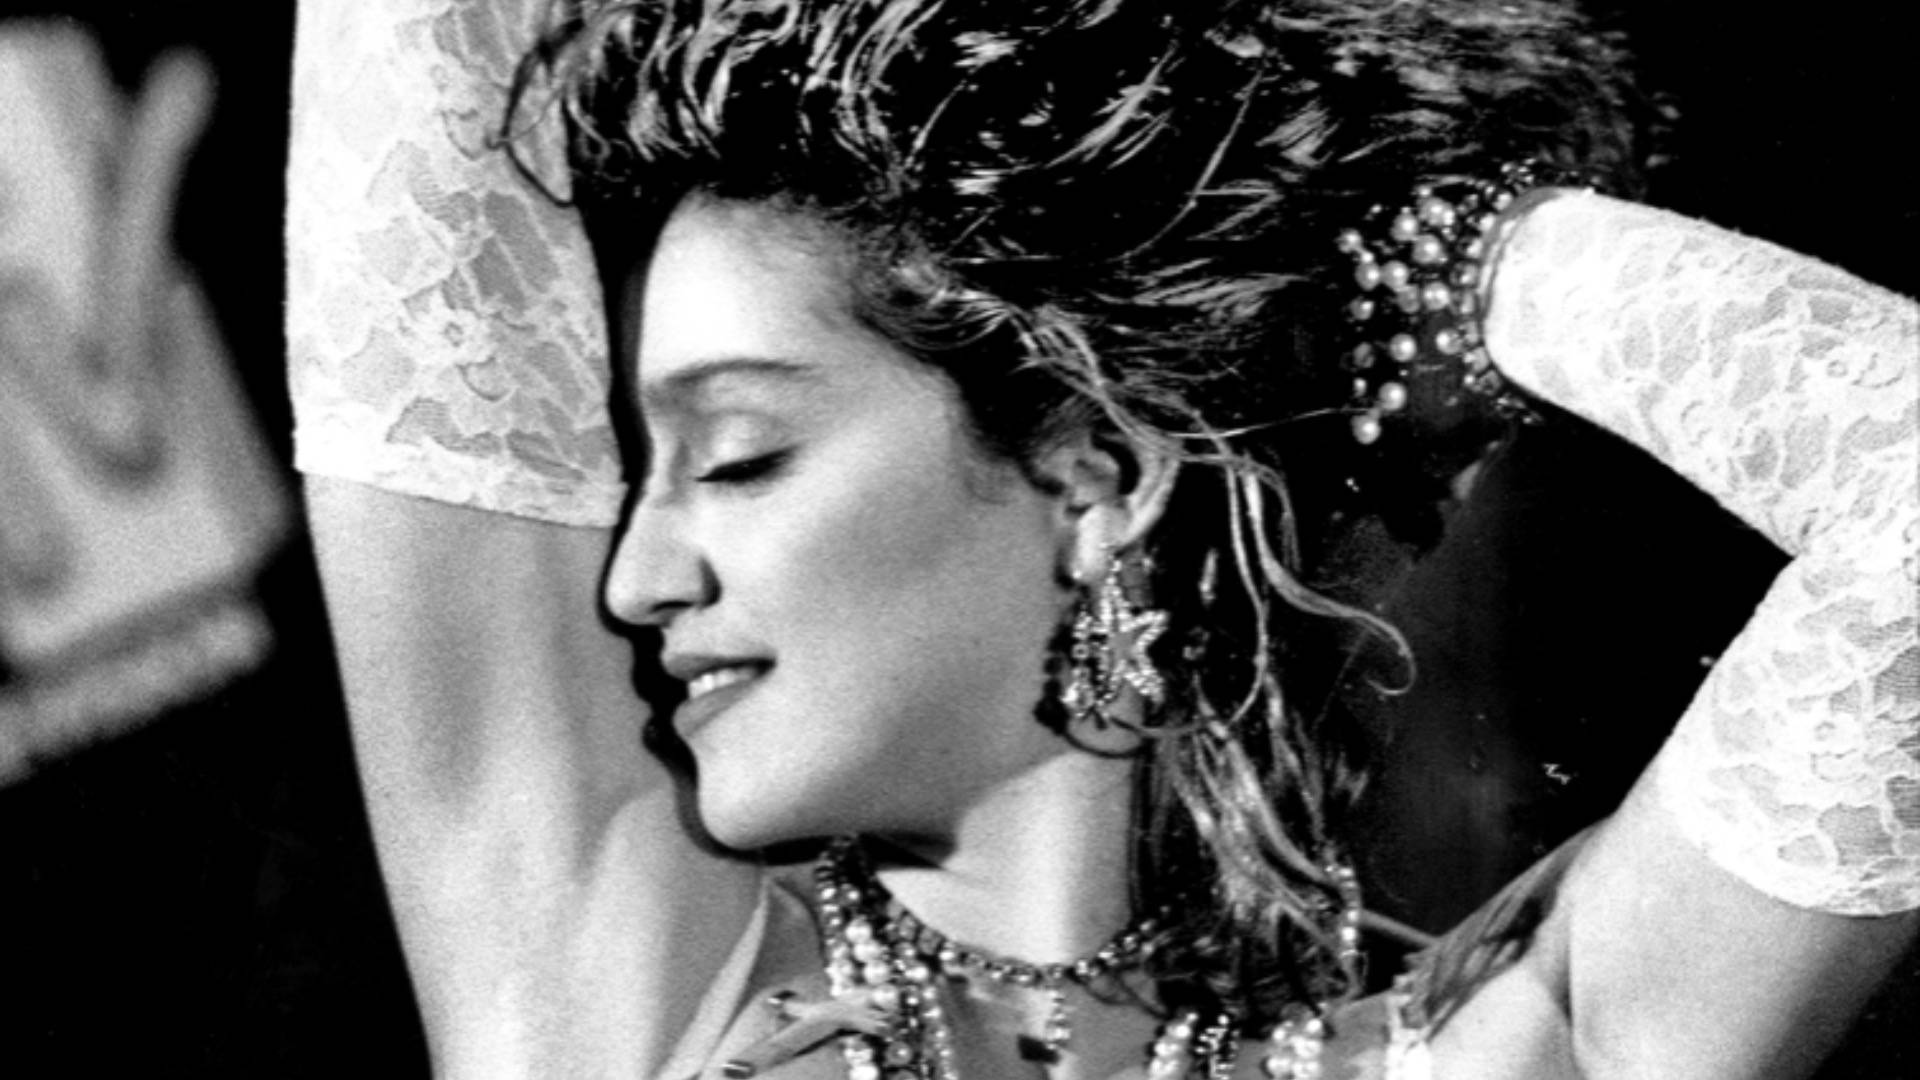 Madonna posing at MTV VMAs in 'Like A Virgin' wedding dress